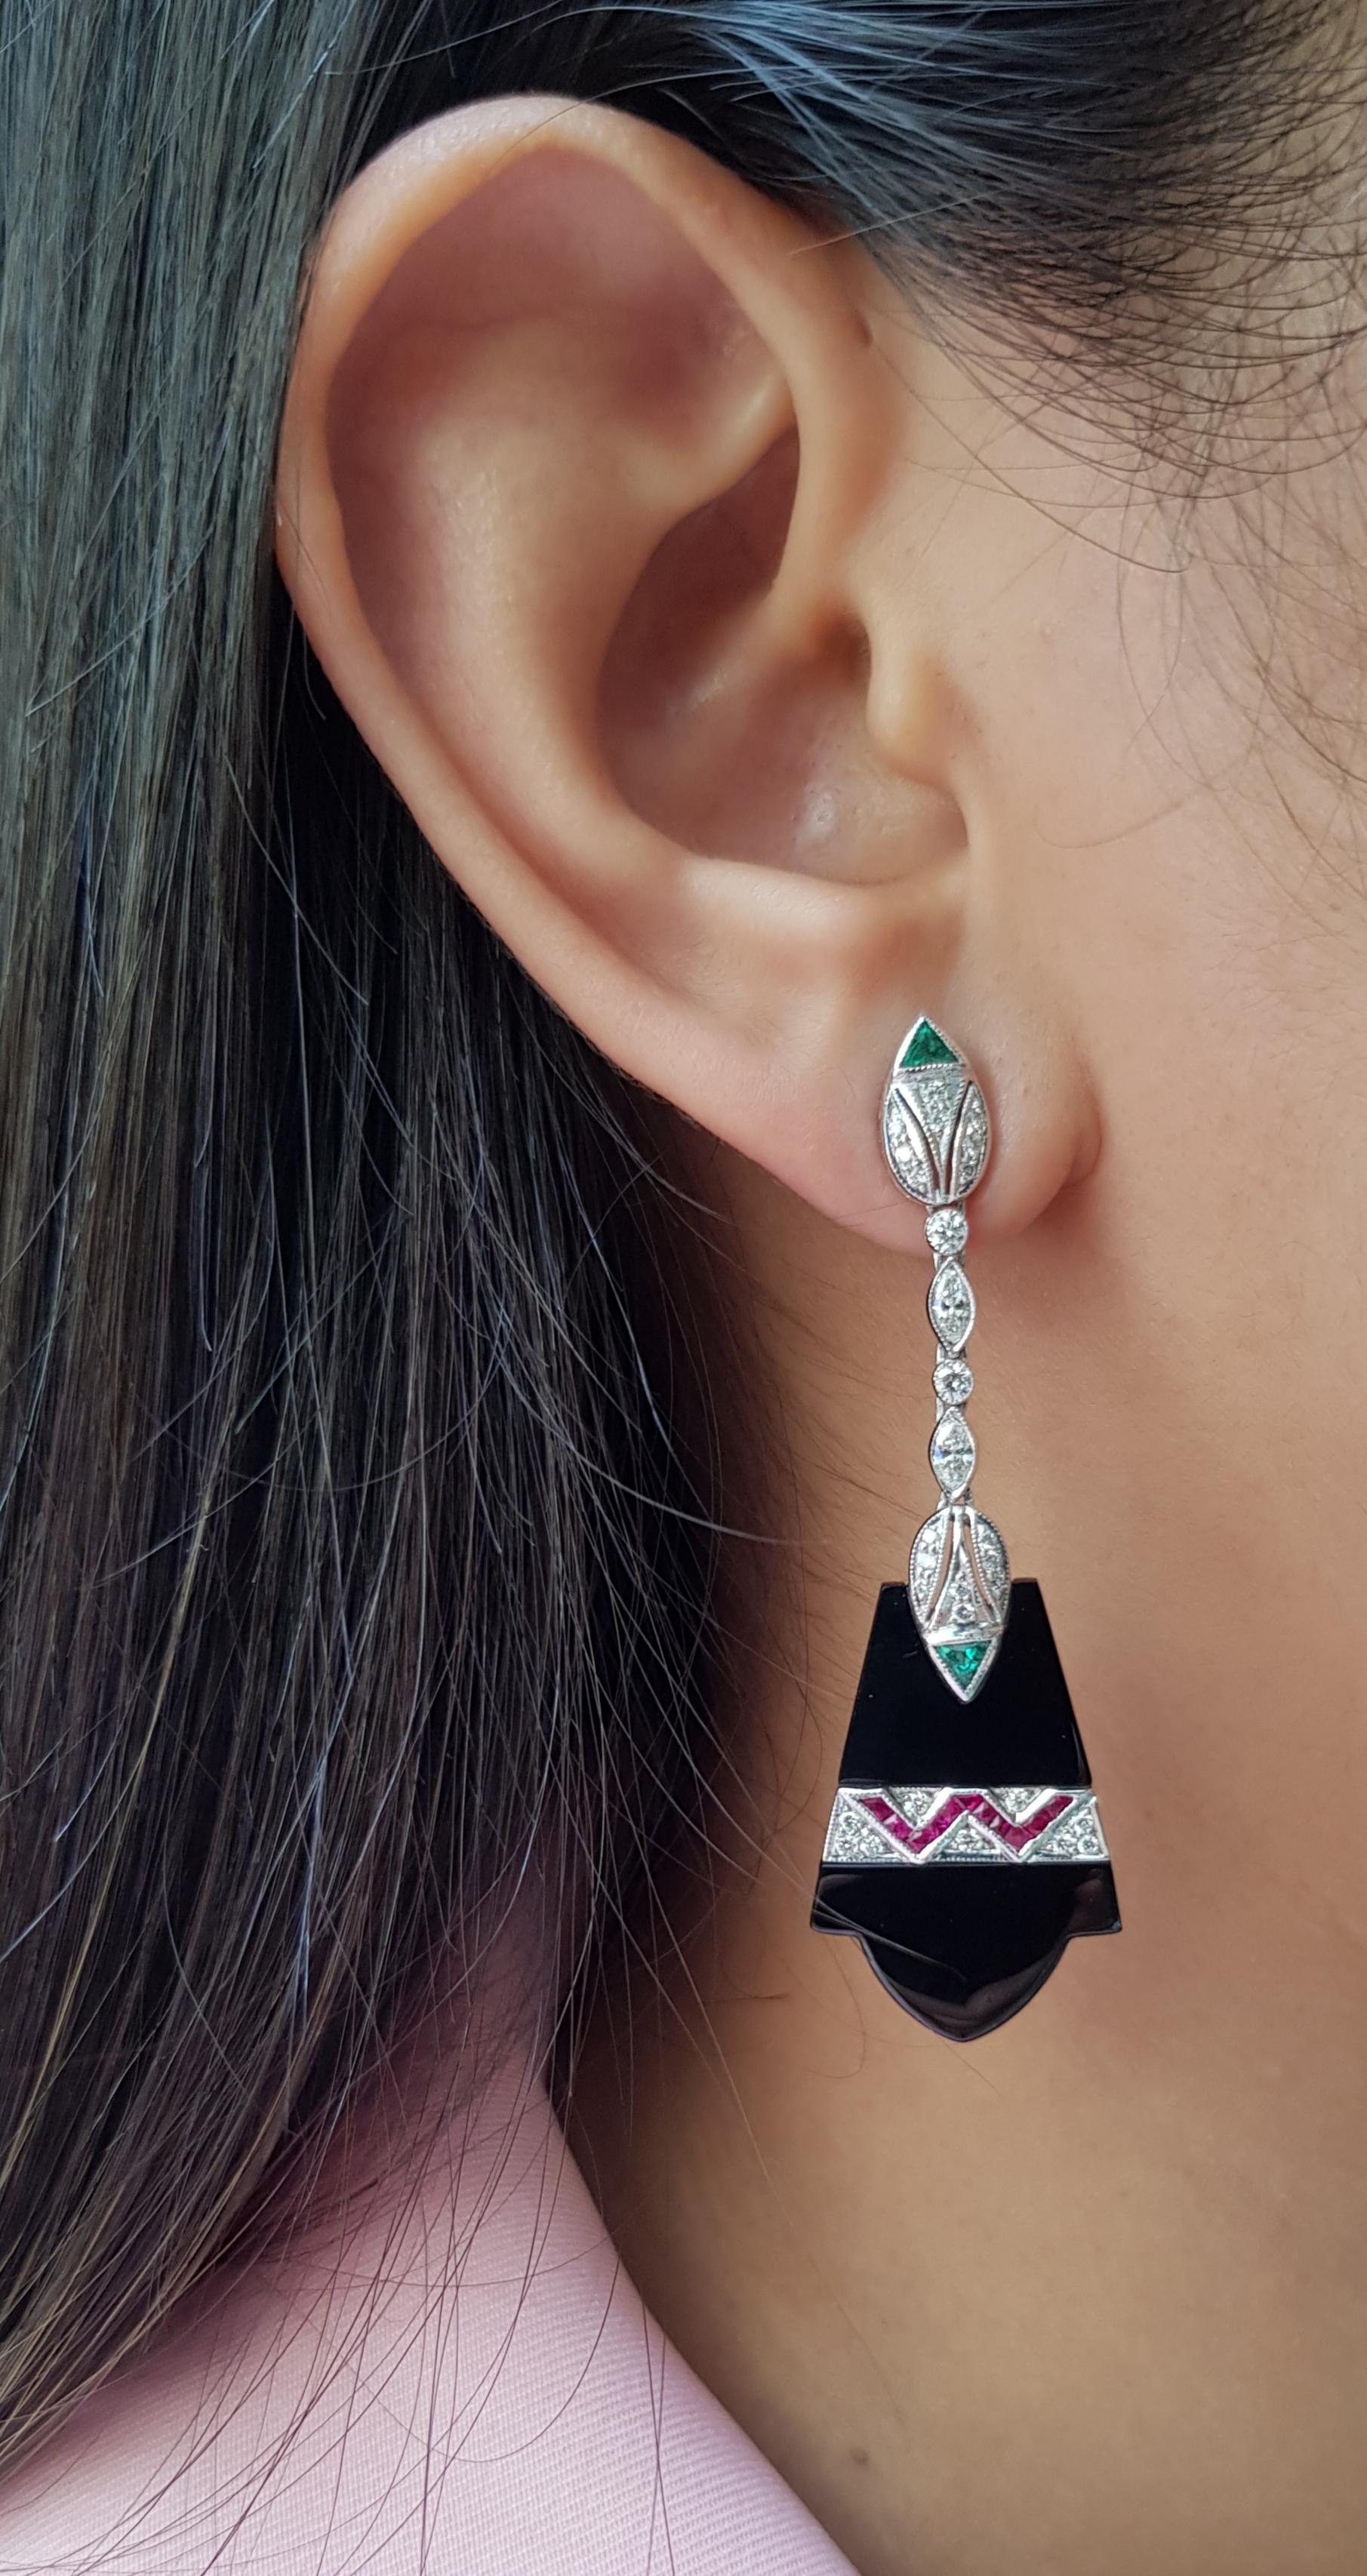 Onyx mit Smaragd 0,61 Karat, Rubin 0,67 Karat und Diamant 0,90 Karat Ohrringe in 18 Karat Weißgoldfassung

Breite: 1,8 cm
Länge: 5,8 cm 

